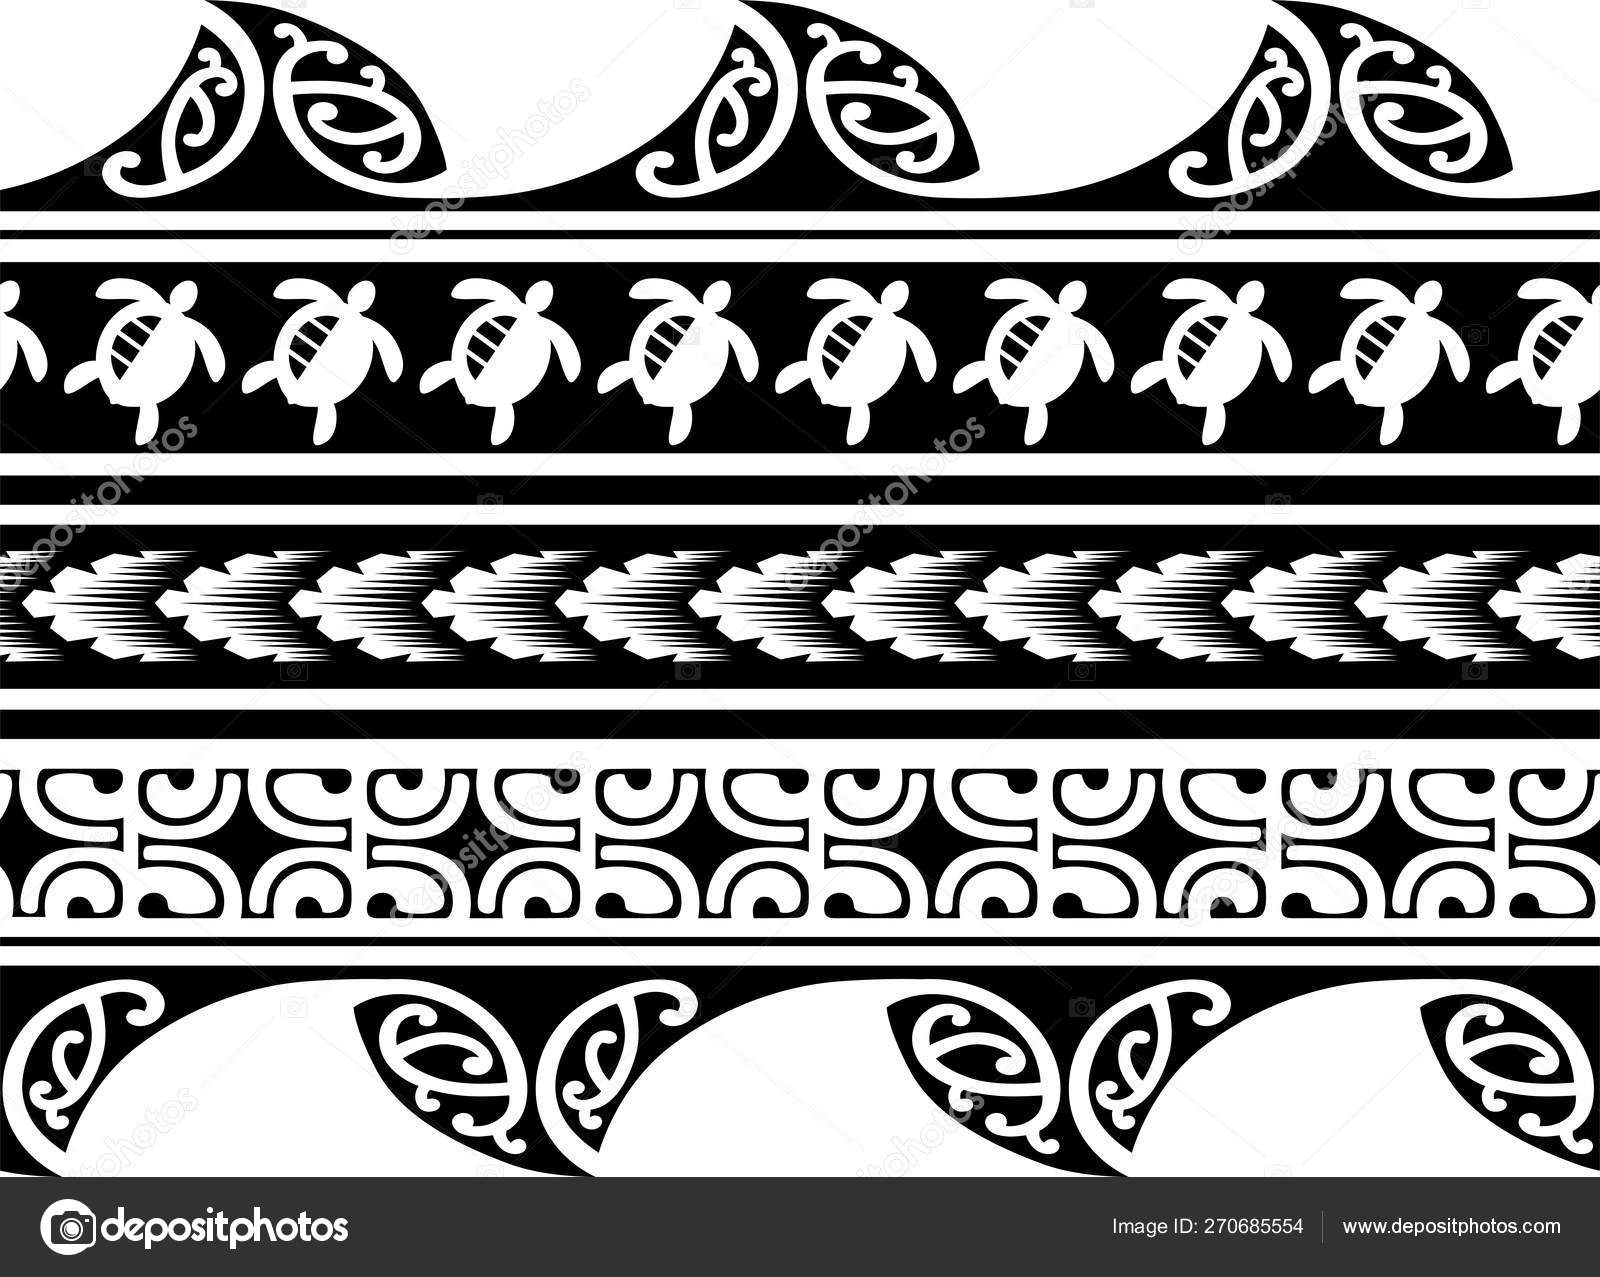 Tattoo Tribal Pattern Design - HD Wallpaper 